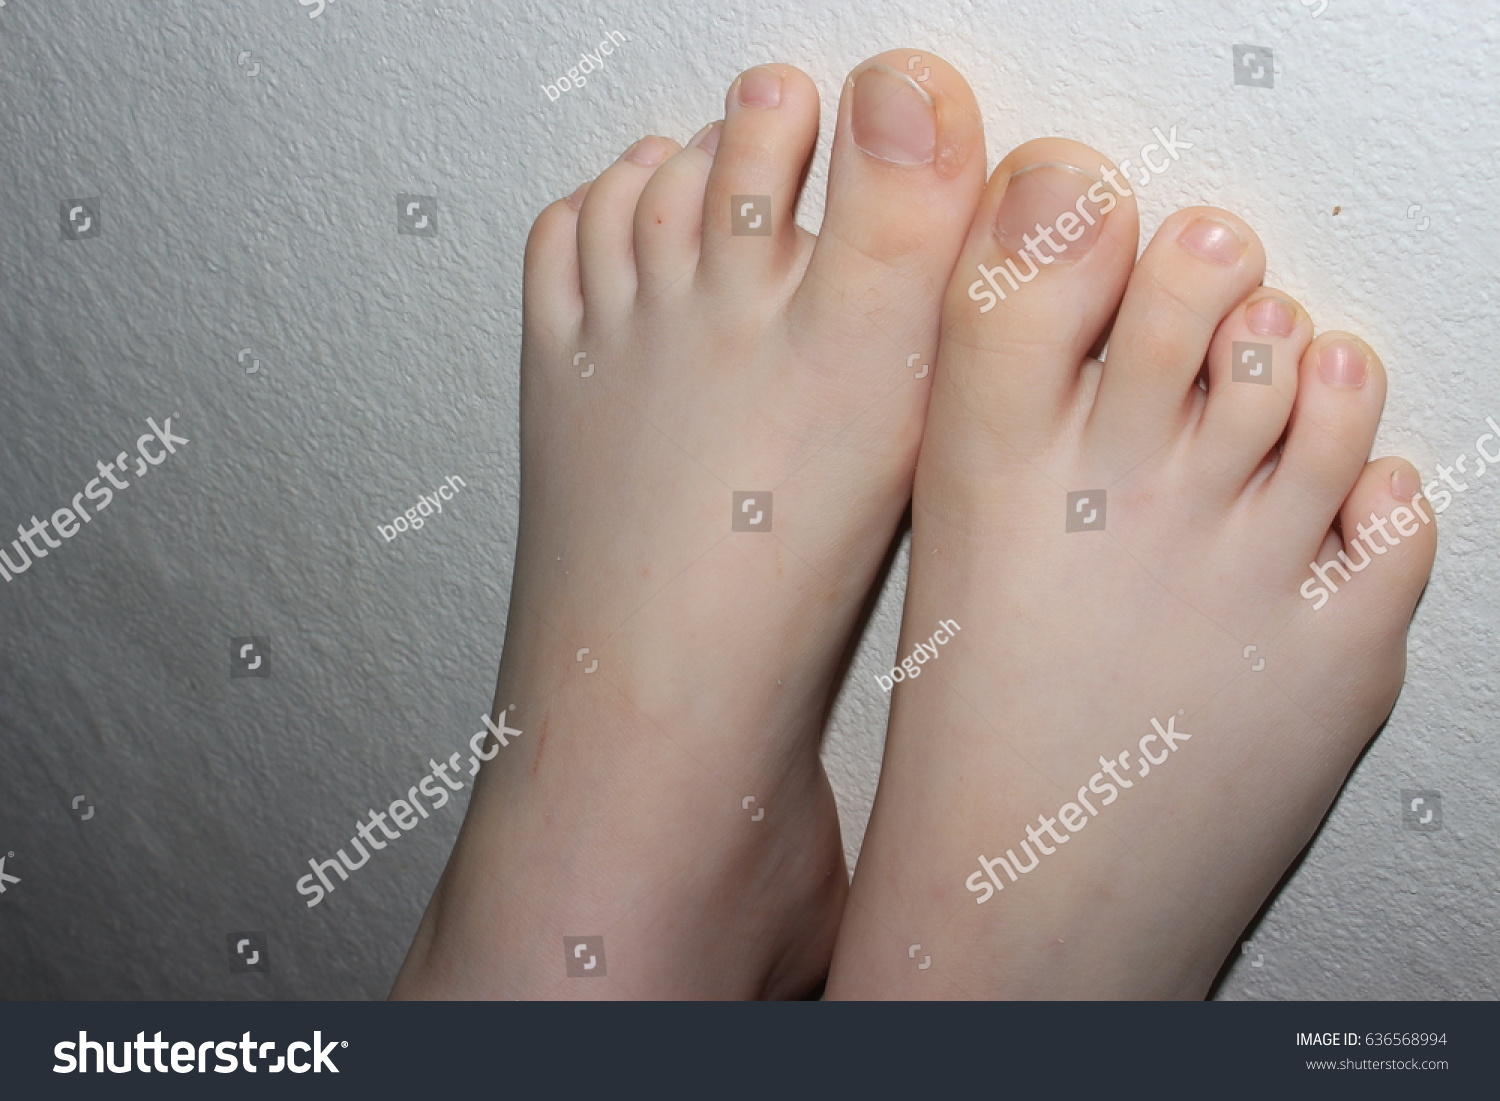 Feet Teen Pics